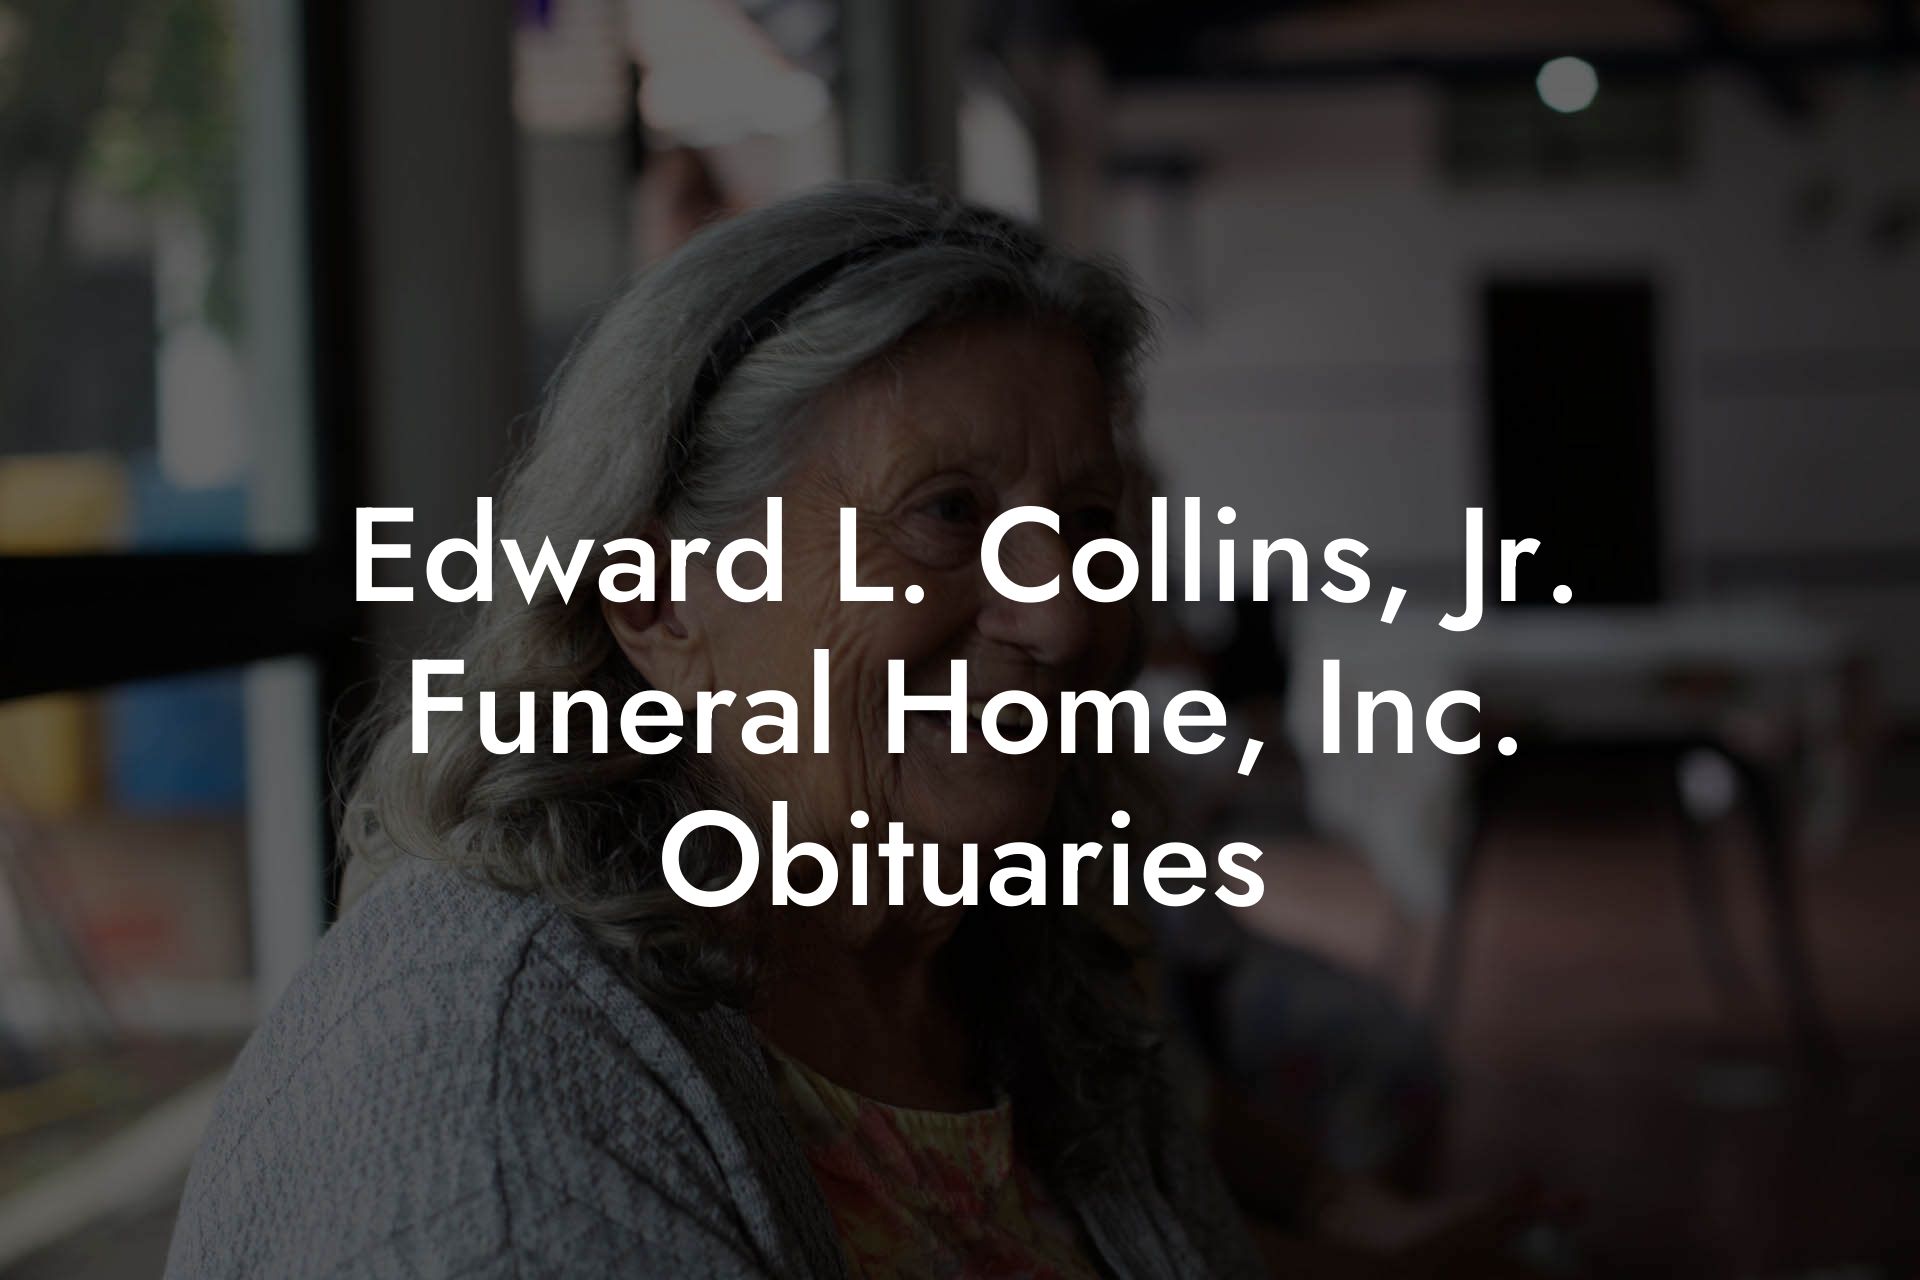 Edward L. Collins, Jr. Funeral Home, Inc. Obituaries